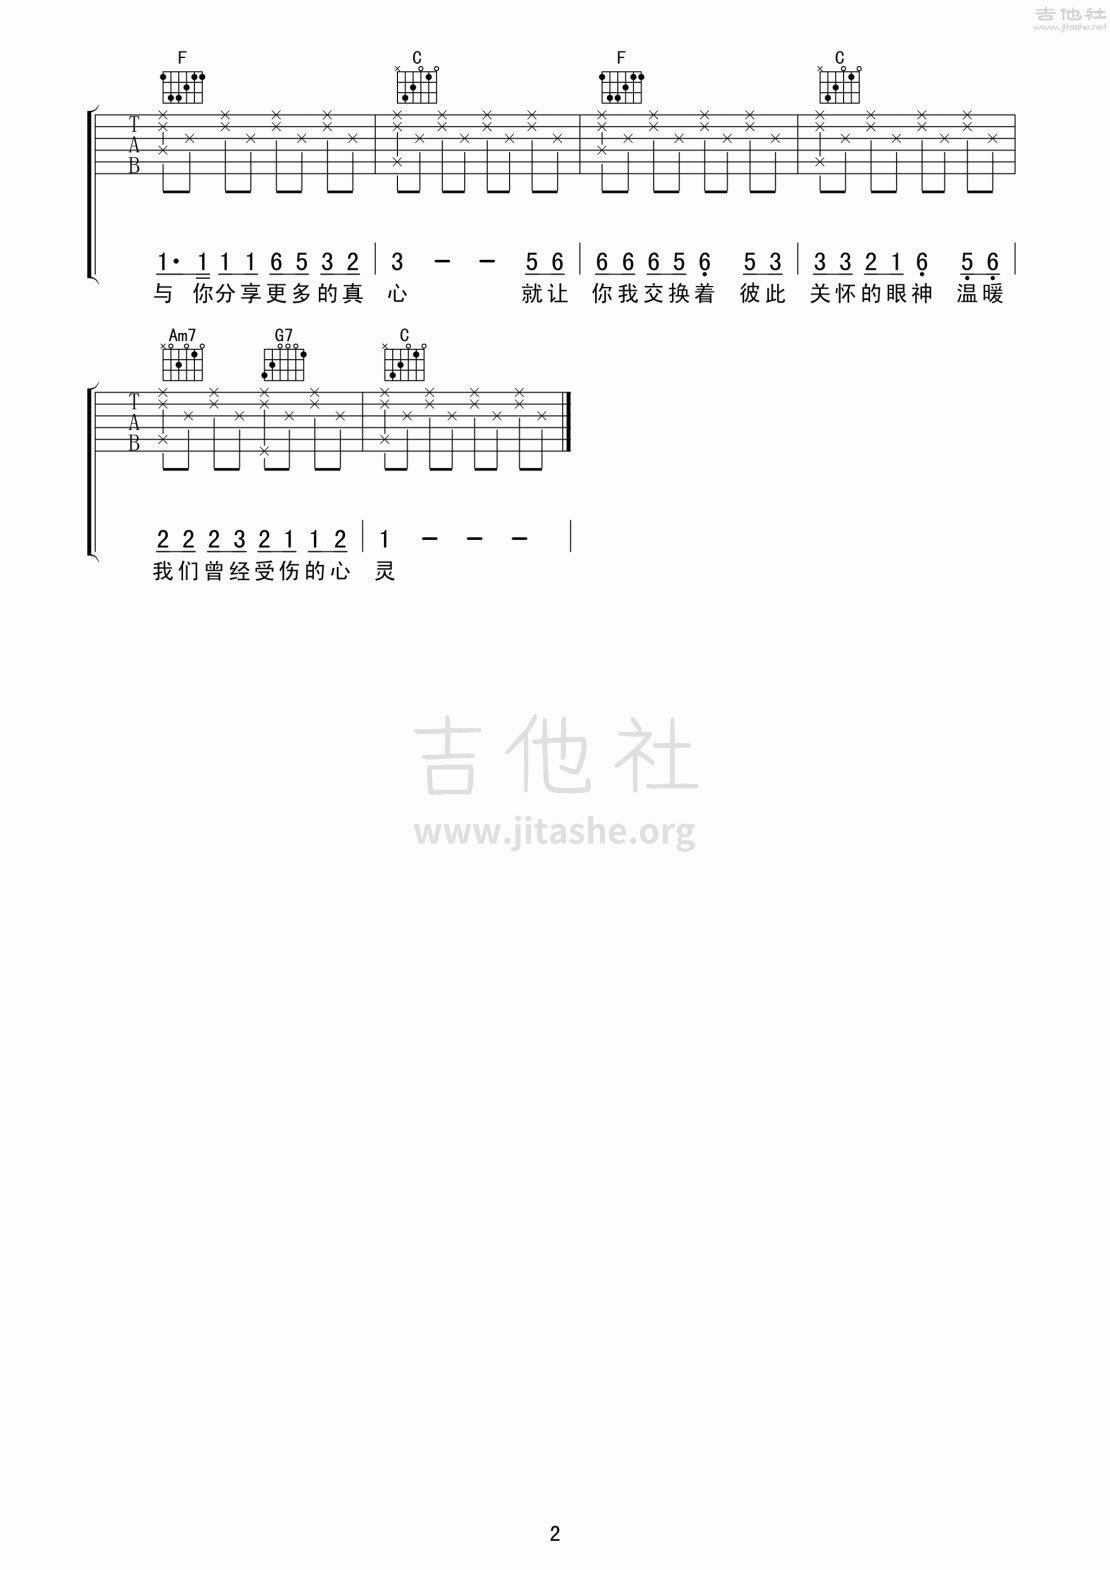 王杰1994吉他谱(图片谱,弹唱,分解和弦)_王杰(Dave Wang)_王杰199402.gif